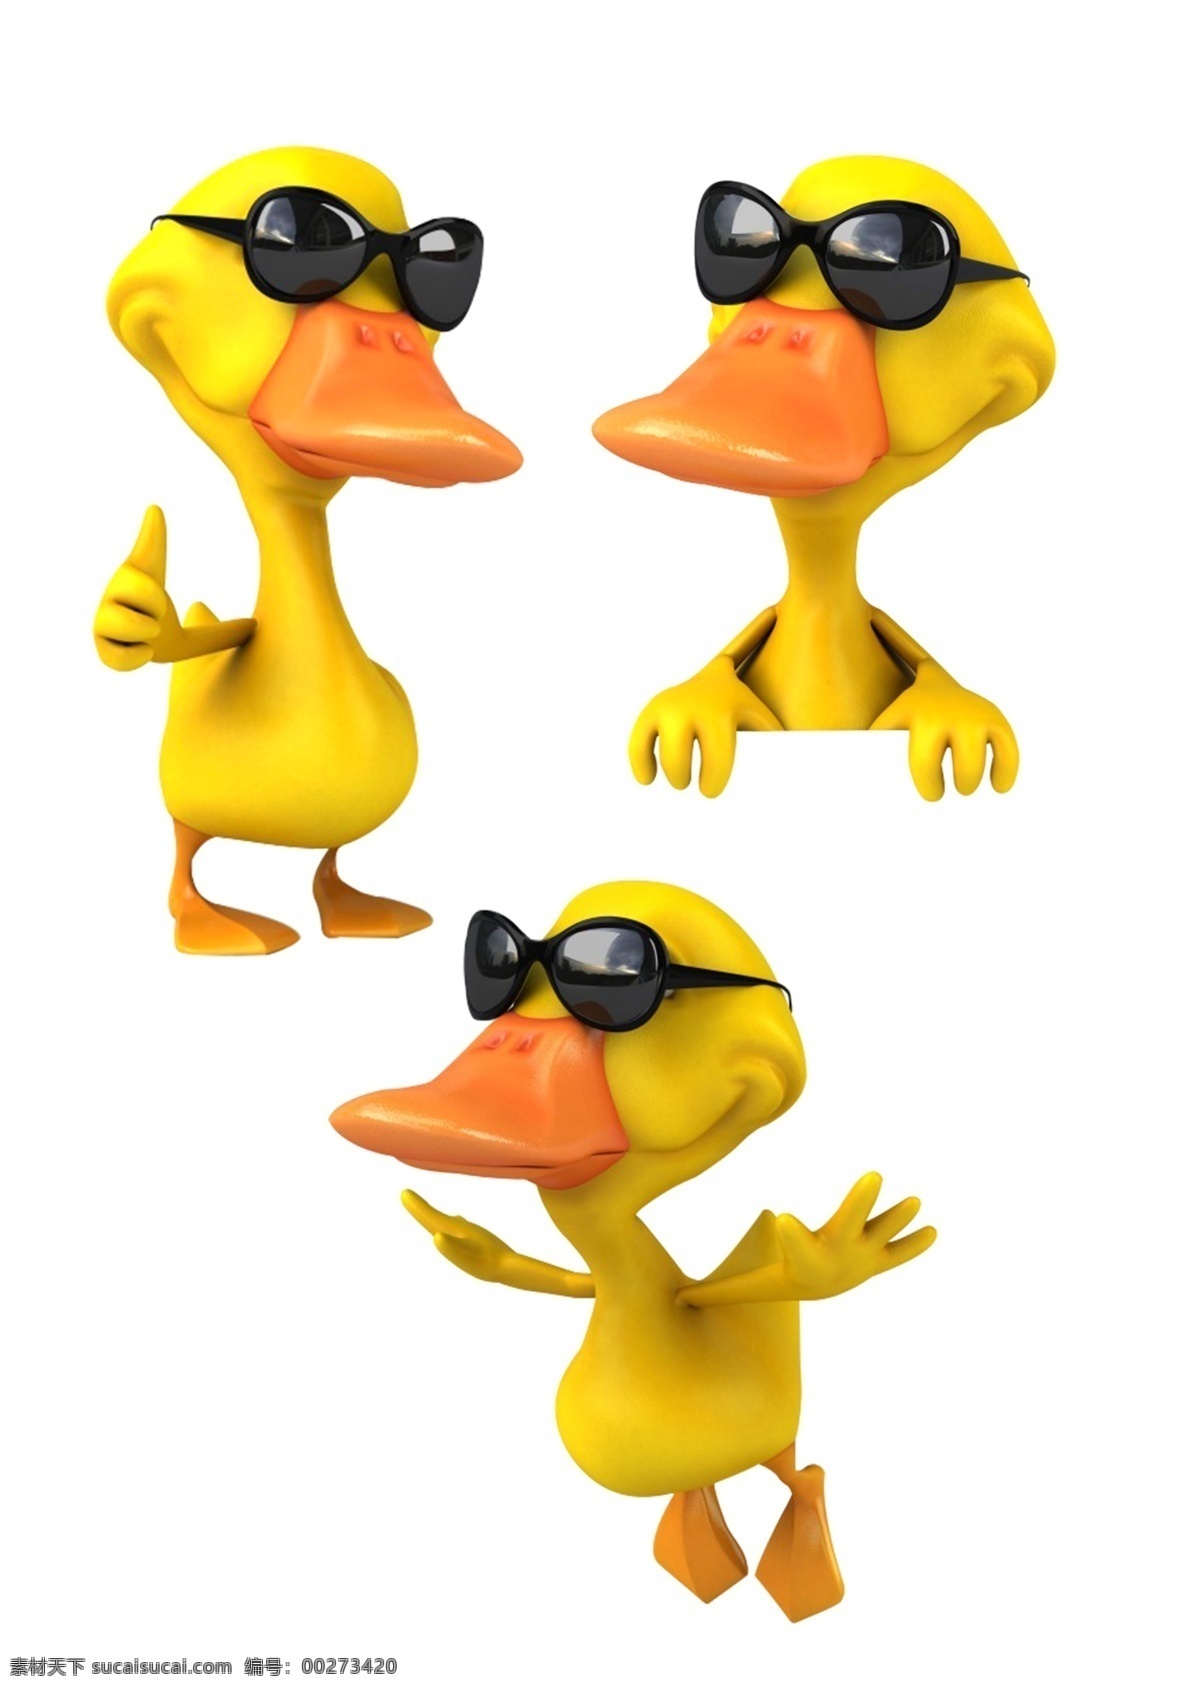 小黄鸭 戴墨镜的鸭子 小飞鸭 黄色 卡通 搞笑 图标 动漫动画 动漫人物